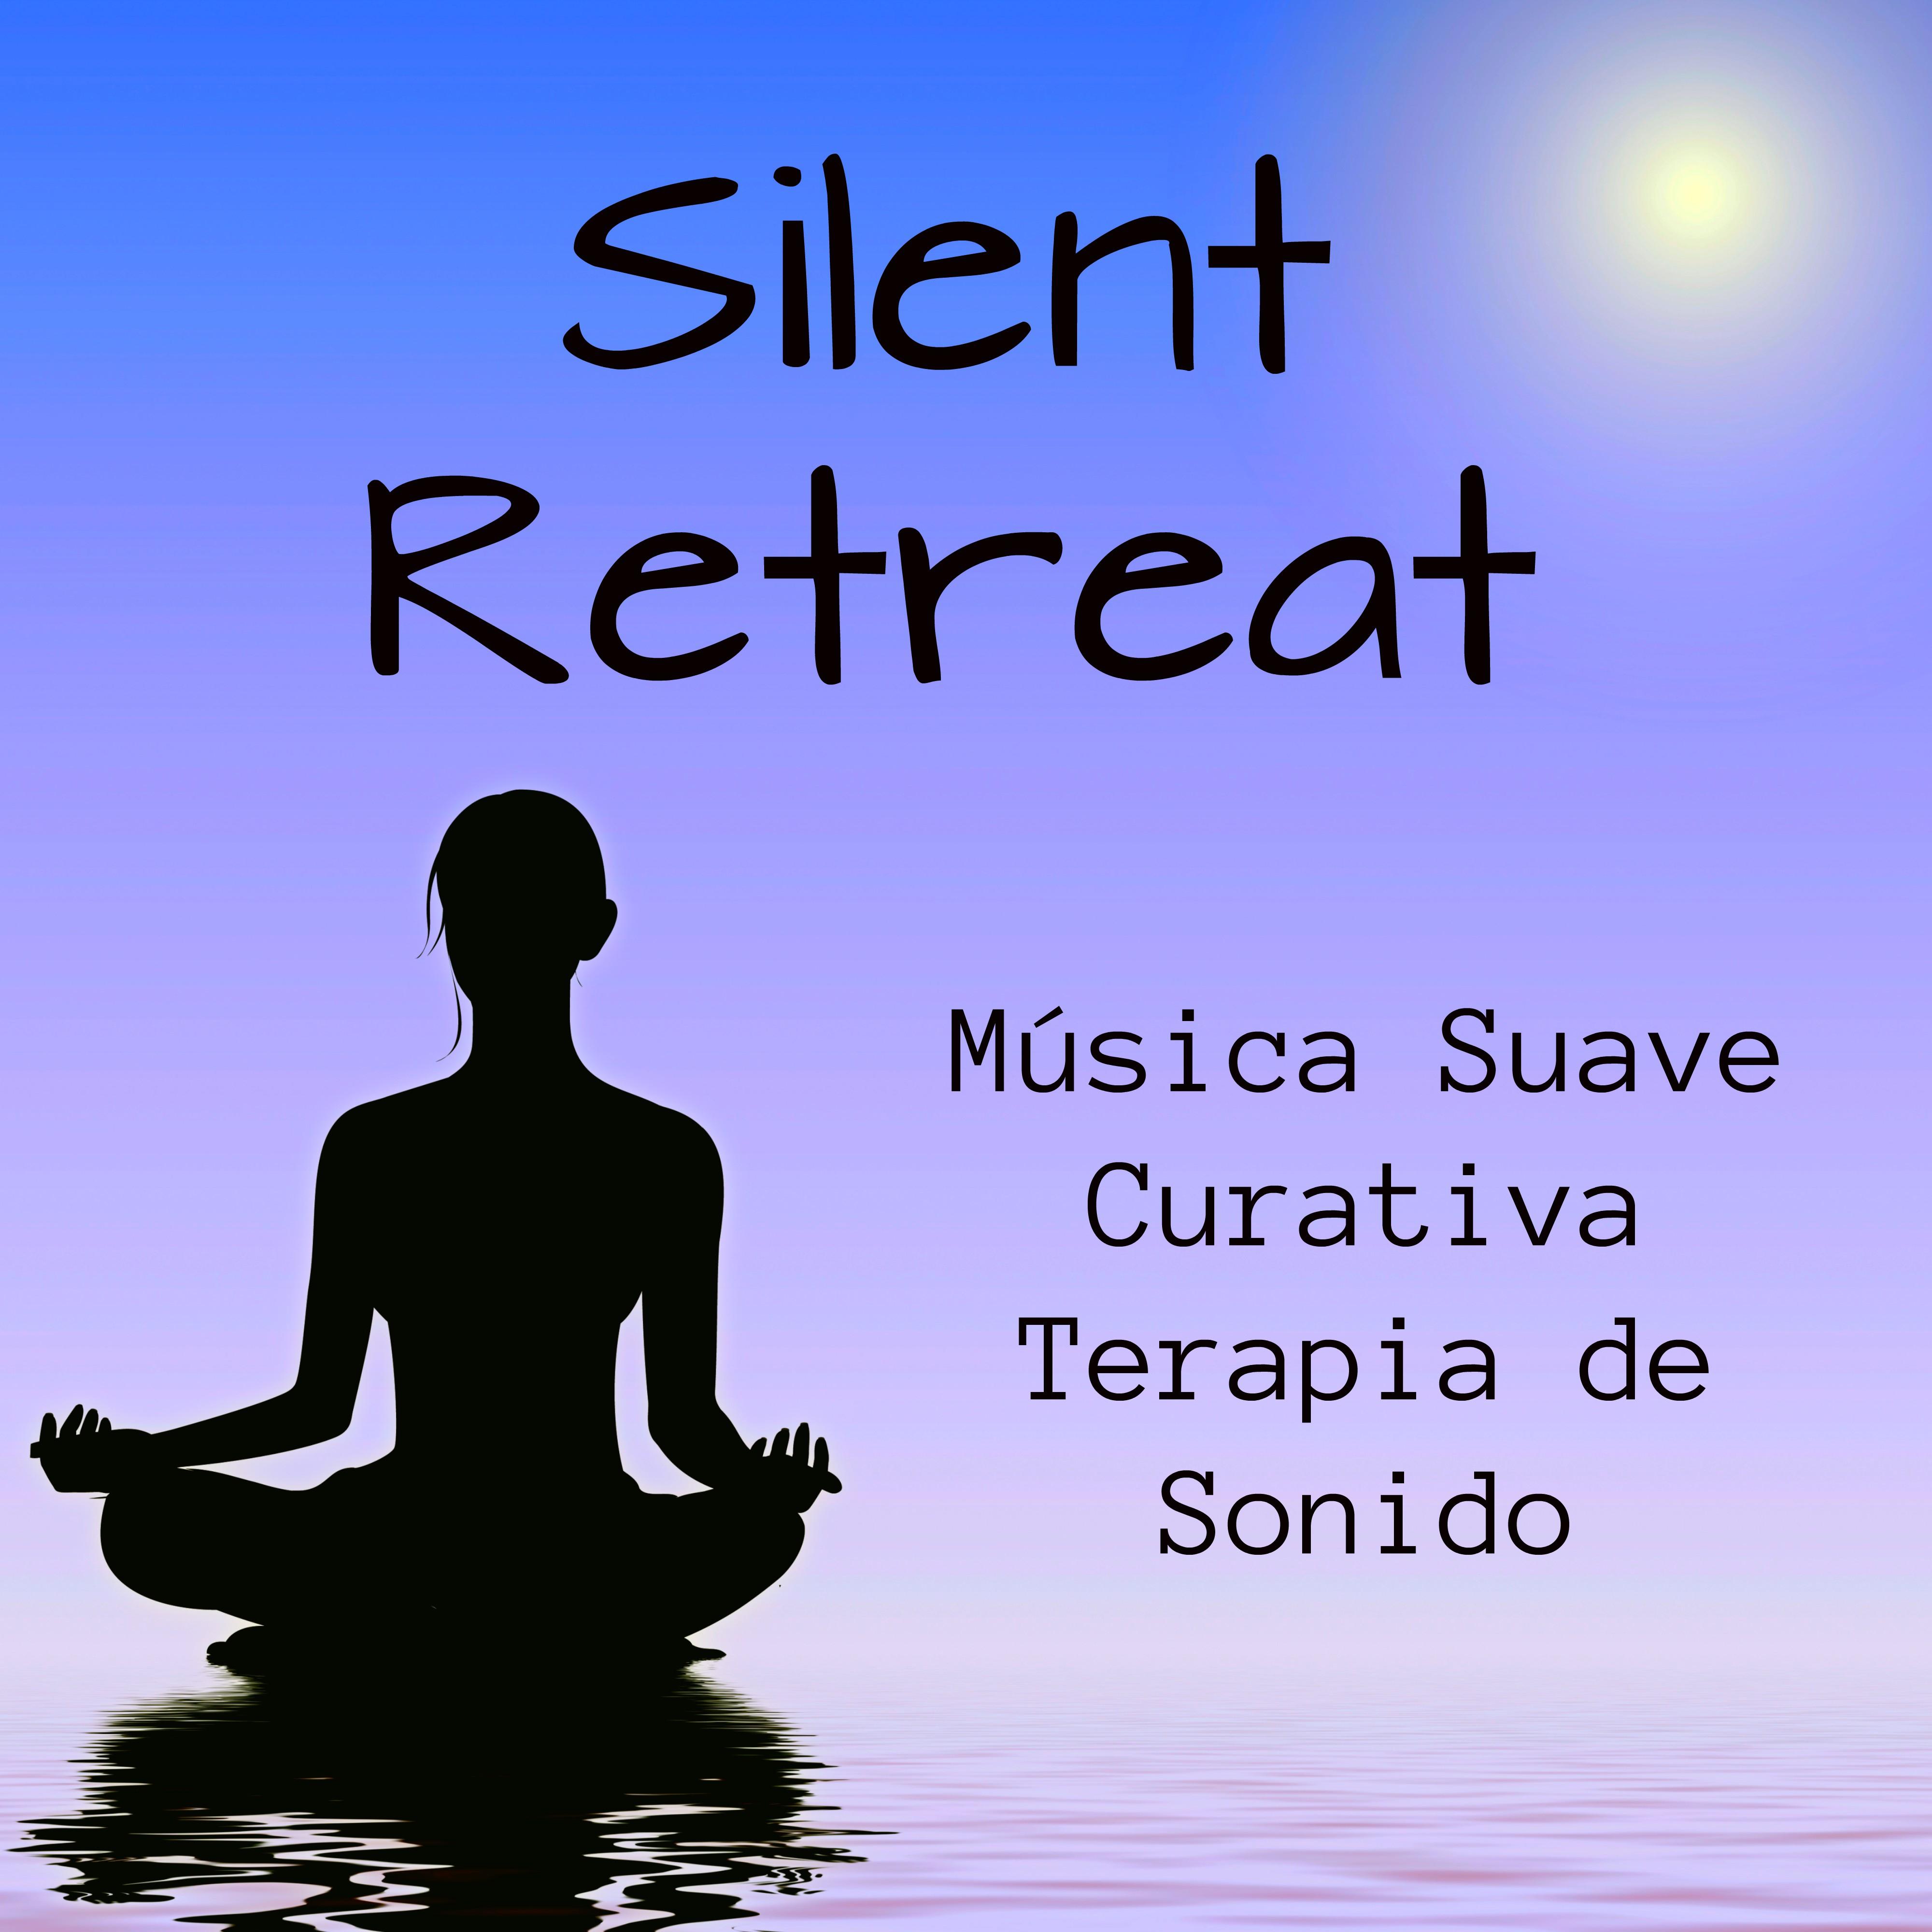 Silent Retreat  Mu sica Suave Curativa Terapia de Sonido para Dormir Bien Relajacion Profunda y Bienestar con Sonidos de la Naturaleza New Age Instrumental